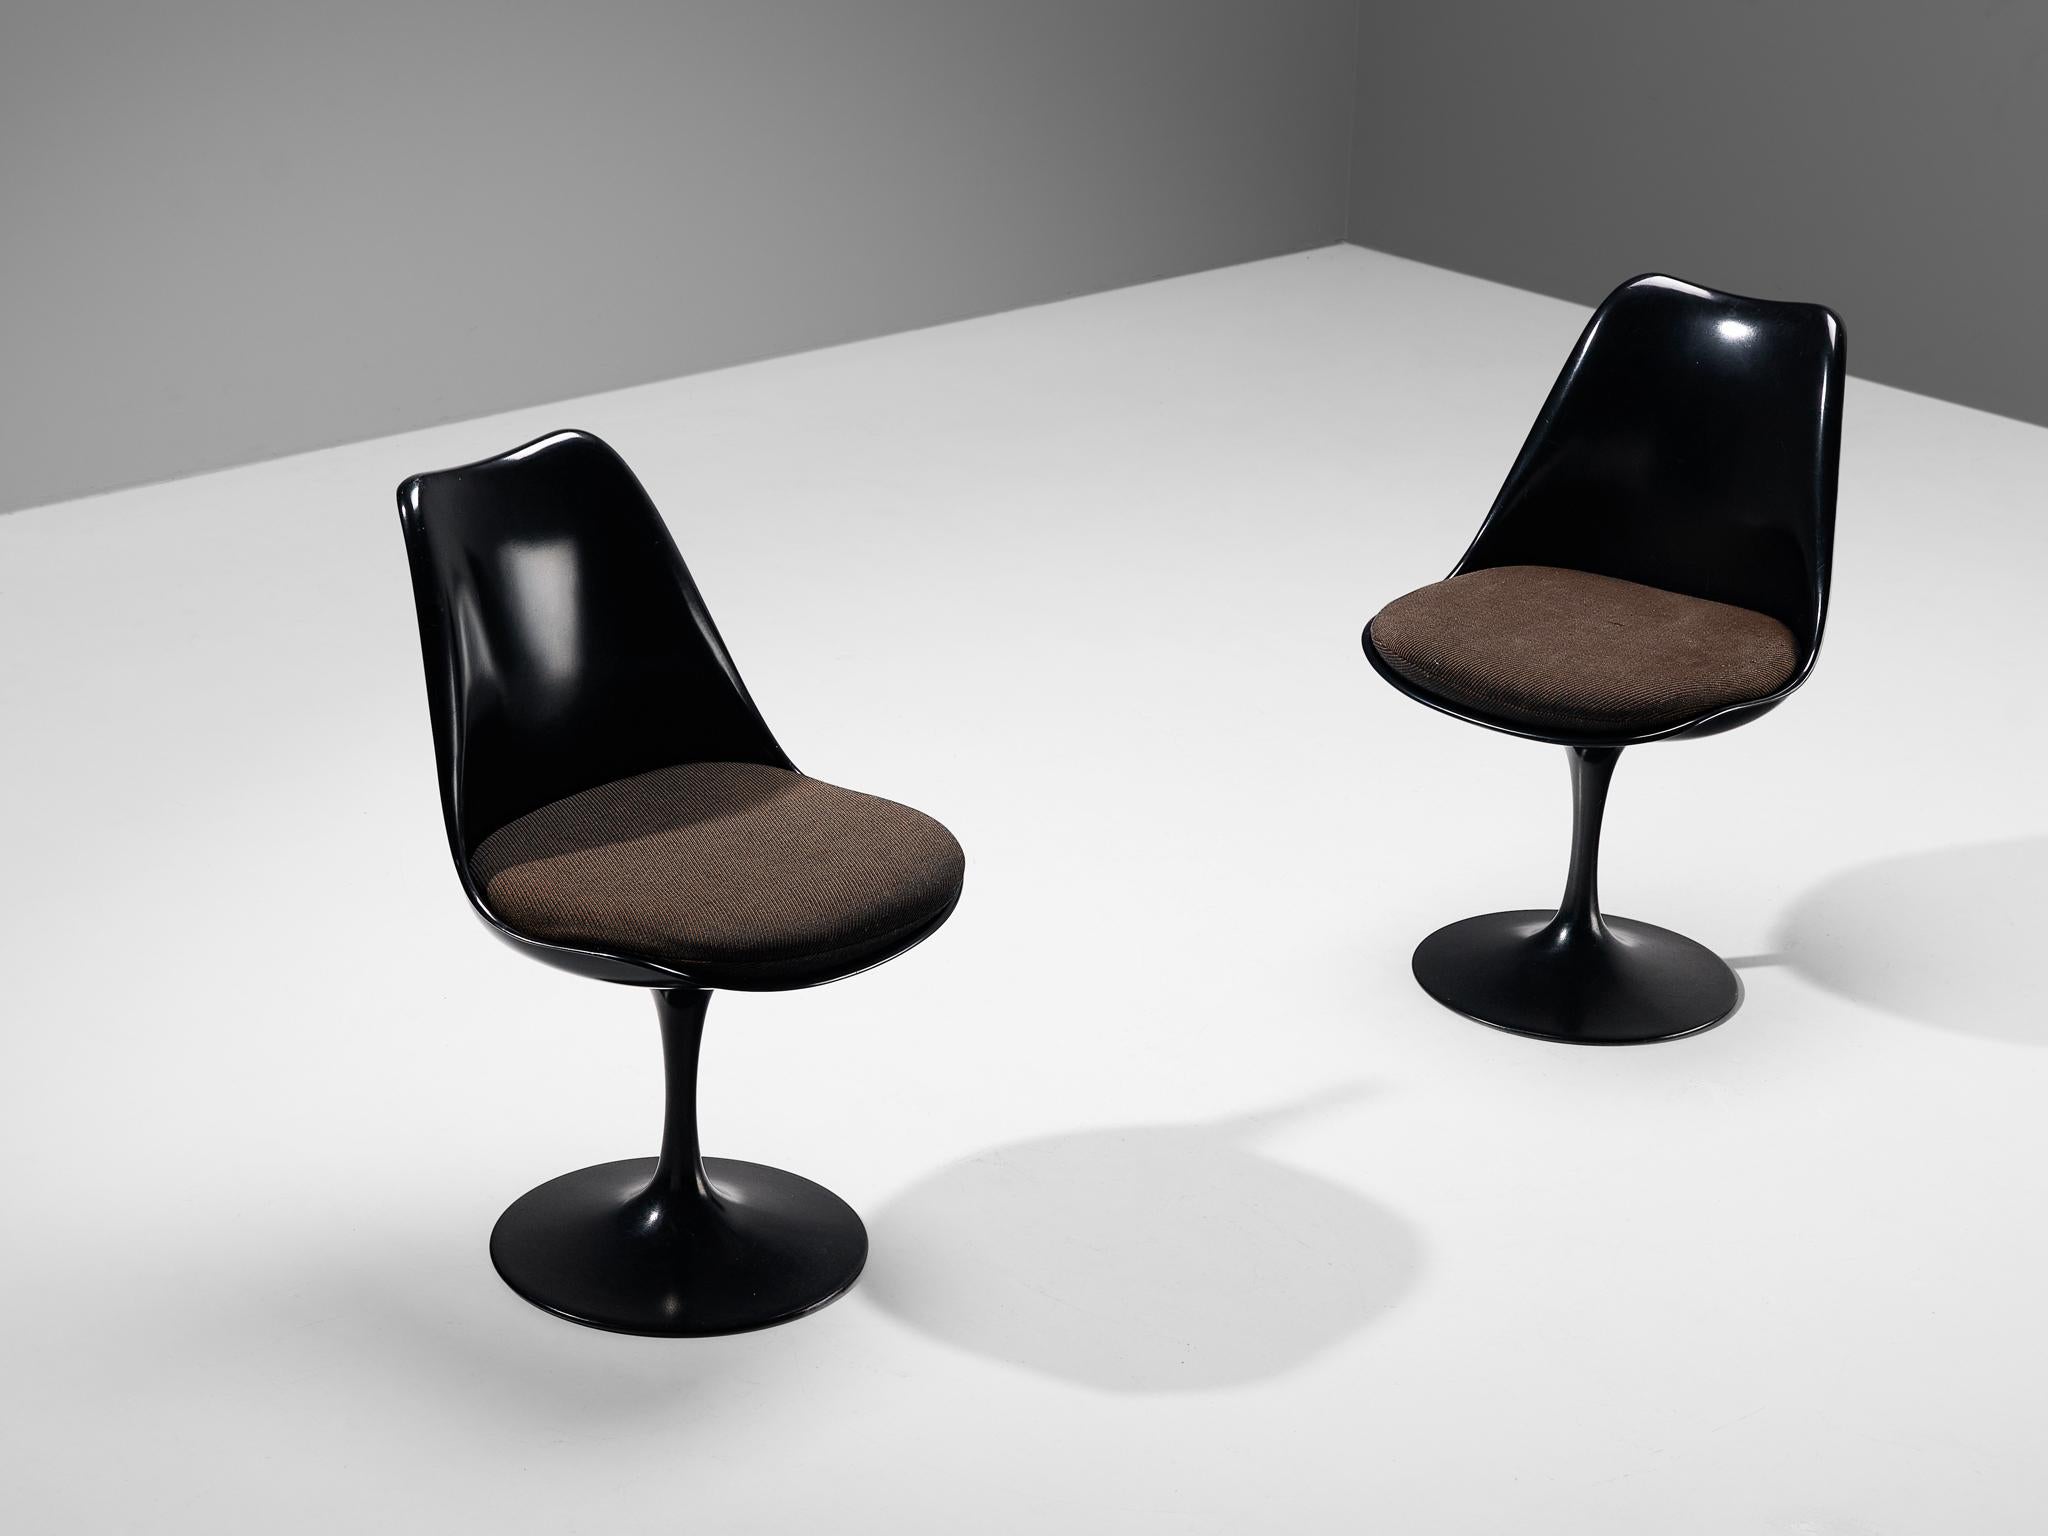 Eero Saarinen pour Knoll, paire de chaises de salle à manger fixes 'Tulip', modèle 151C, fibre de verre, aluminium, tissu, États-Unis, design 1955-57, production 1950s/1960s

Cette paire de chaises de salle à manger de couleur noire fait partie de